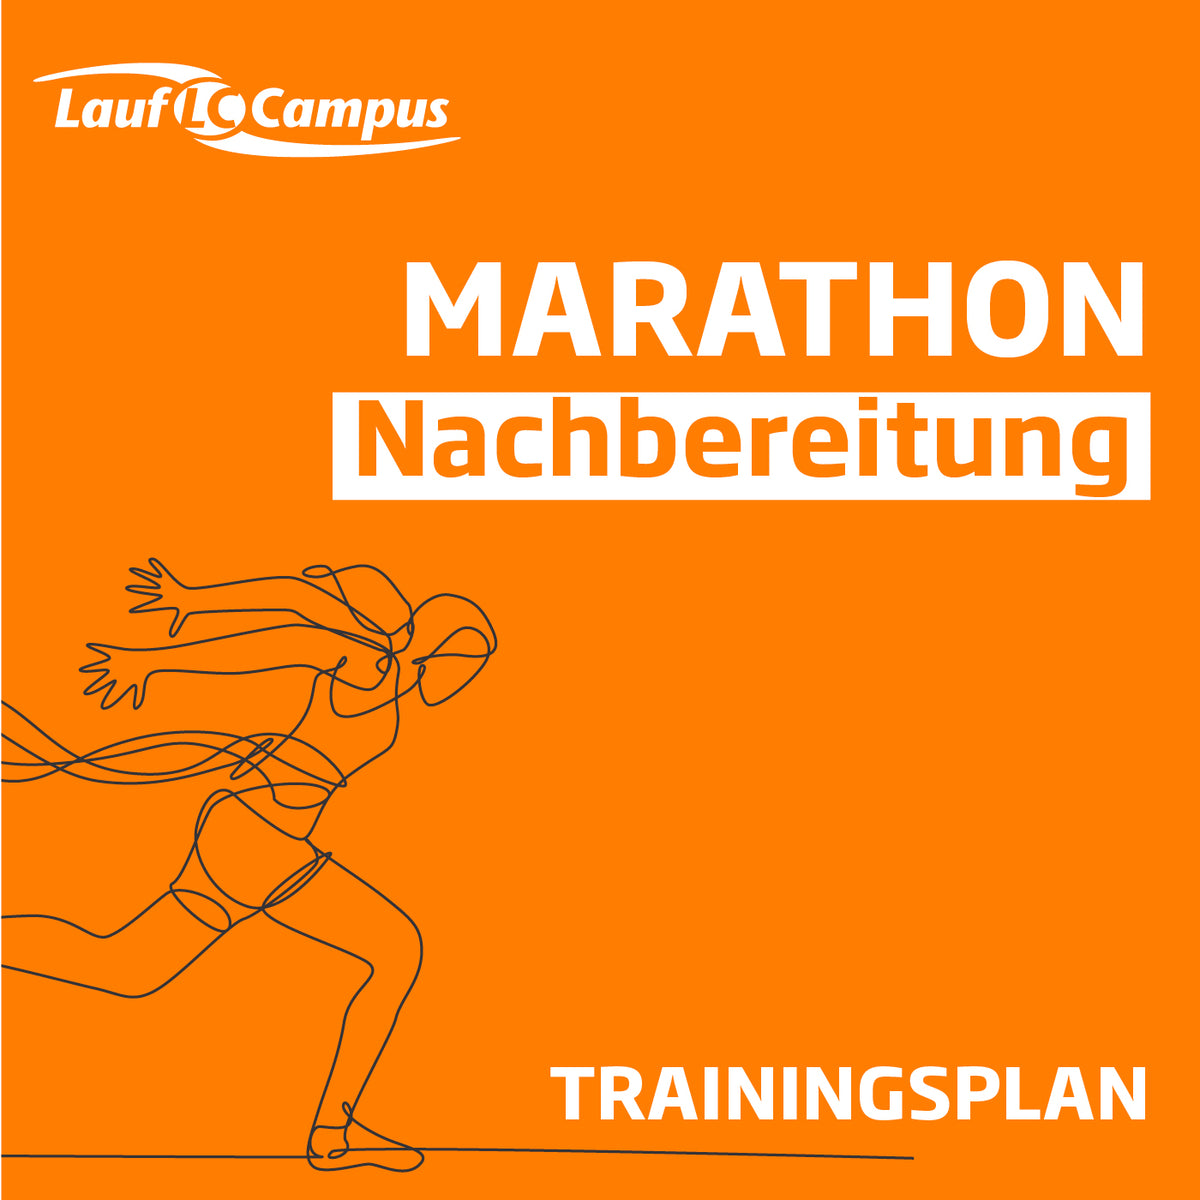 Trainingsplan für Marathon Nachbereitung